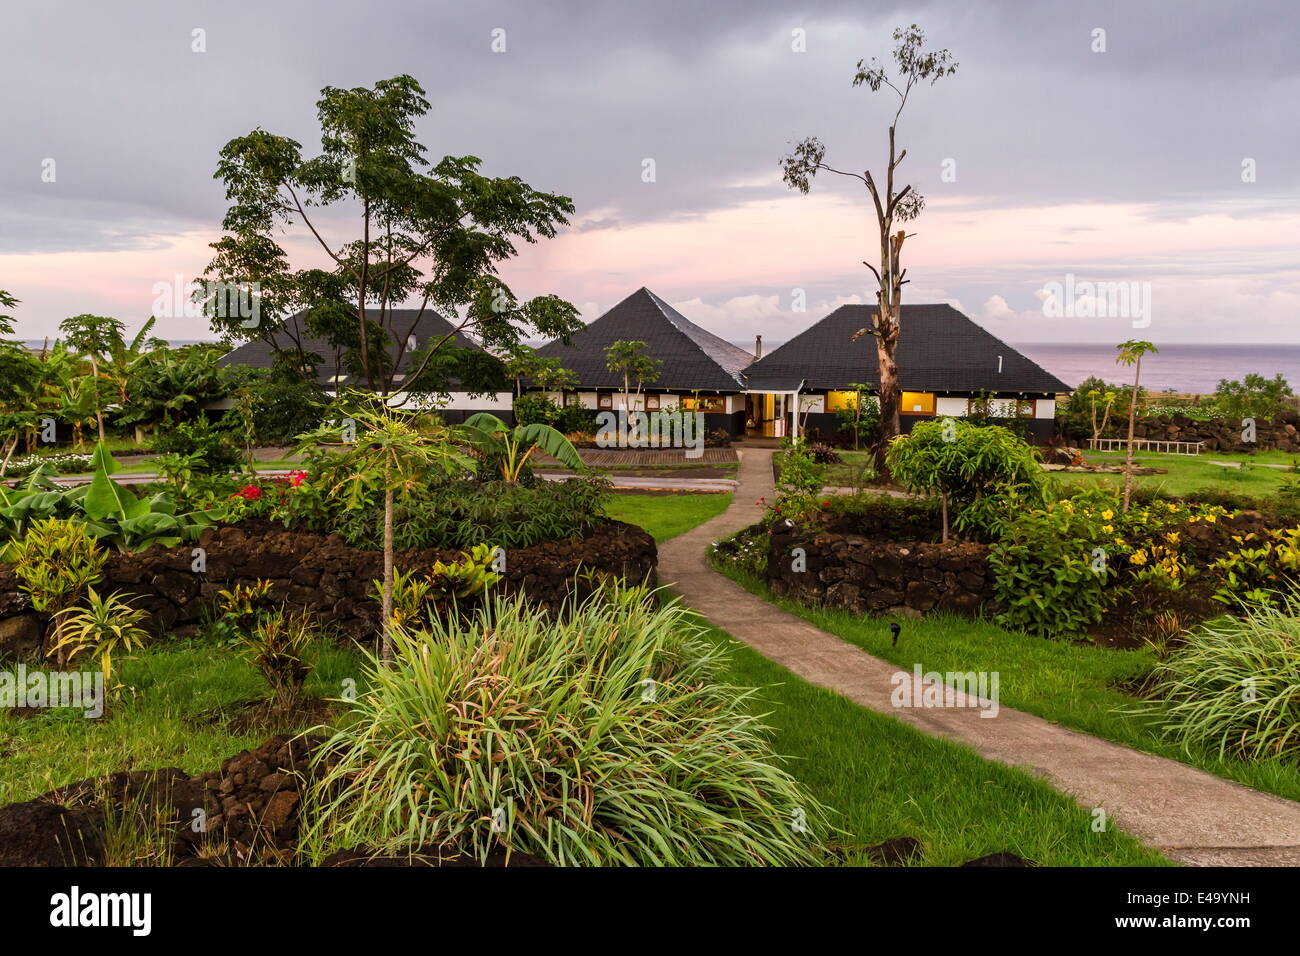 Une vue de l'hôtel Altiplanico sur l'île de Pâques (Isla de Pascua), Rapa Nui, Chili, Amérique du Sud Banque D'Images